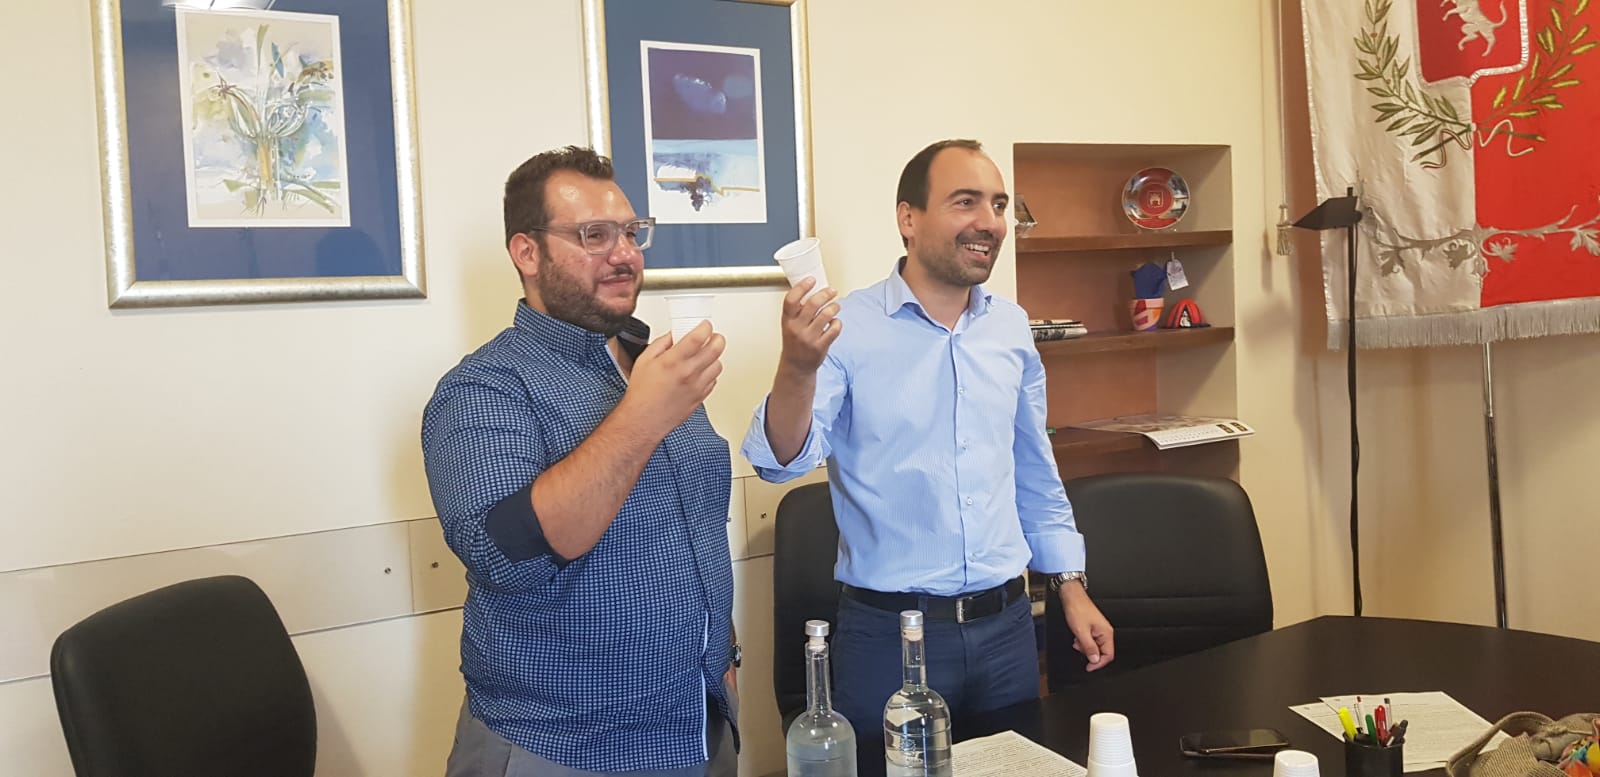 da sinistra l'assessore all'ambiente, Alberto Vignoli e il sindaco Calami con in mano bicchieri in polpa di cellulosa (foto da comunicato)